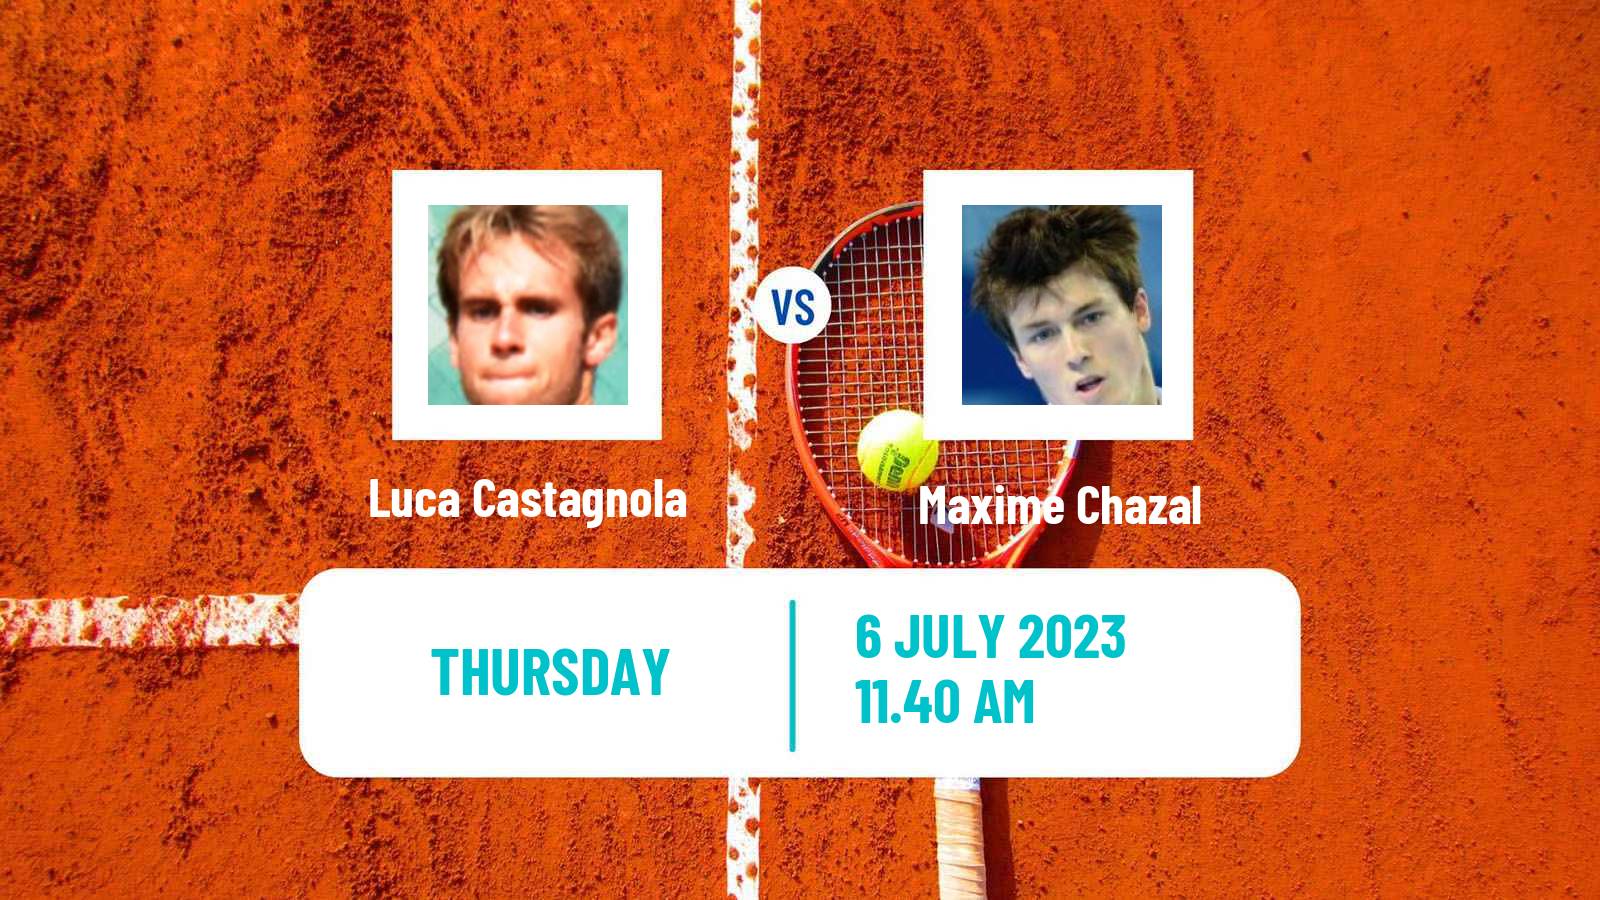 Tennis ITF M25 Biella Men Luca Castagnola - Maxime Chazal